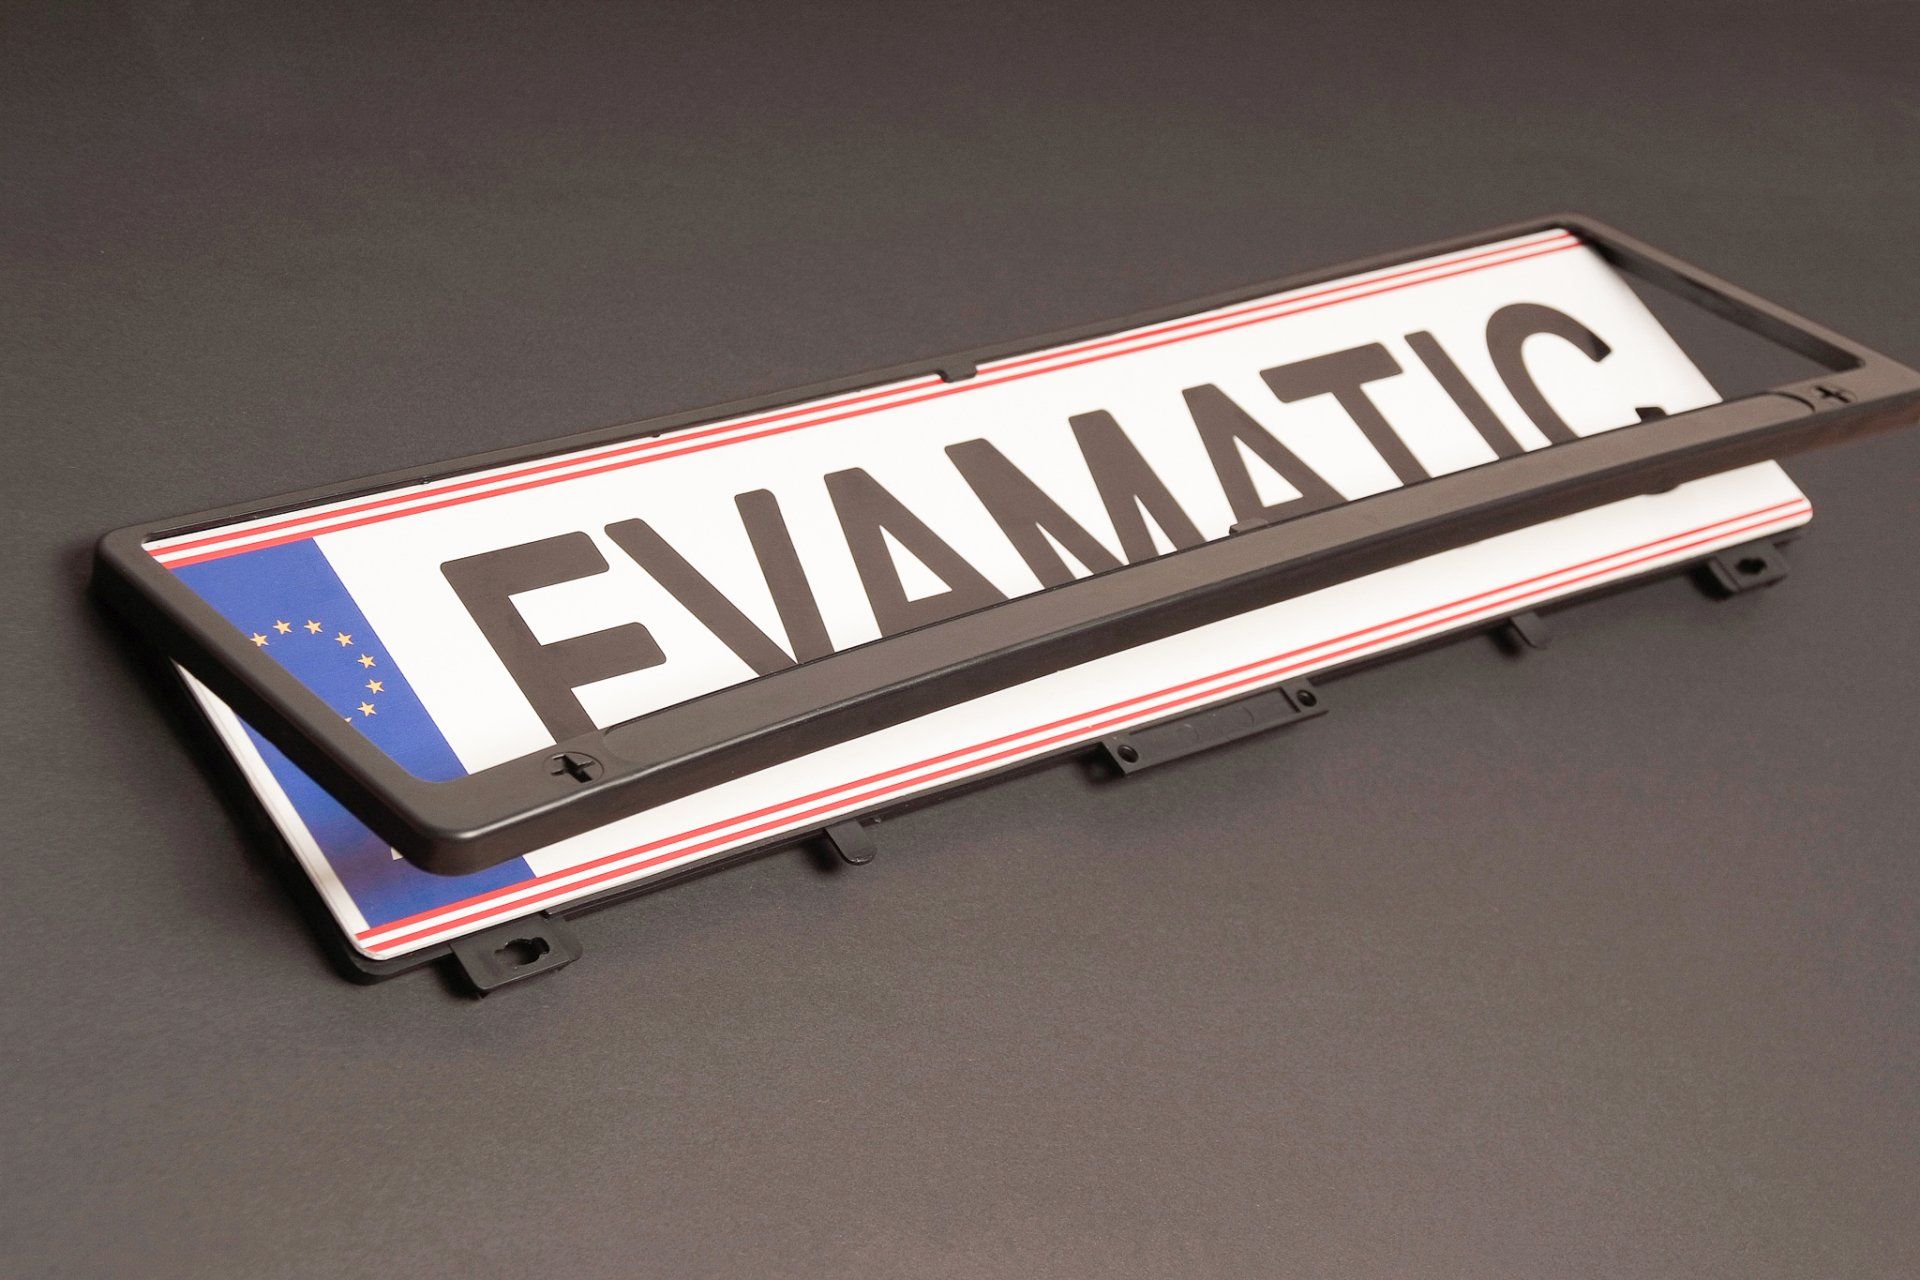 Ein Nummernschild mit dem Wort „evamatic“ darauf